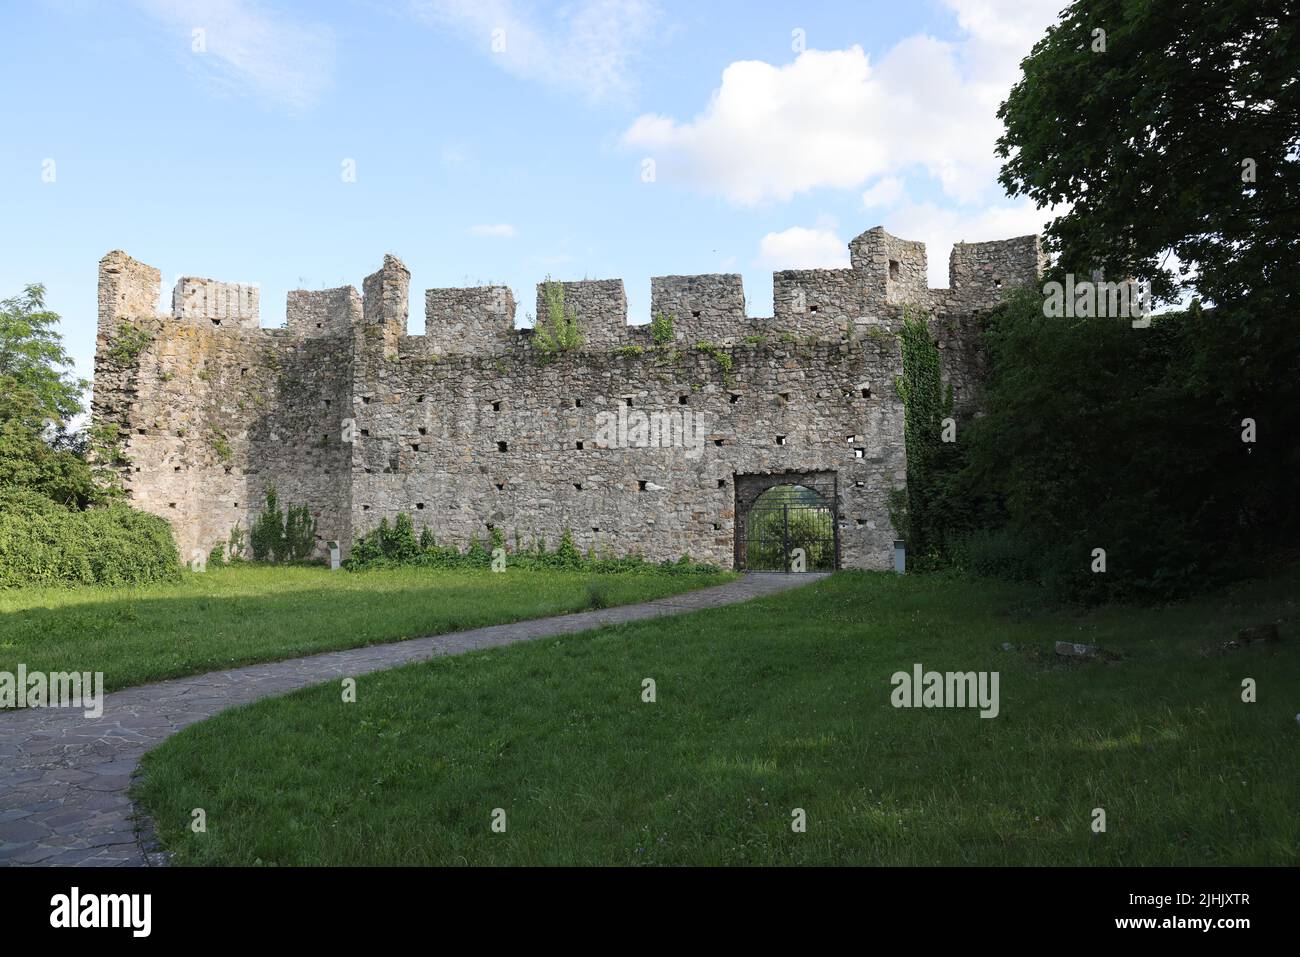 Porta meno fotografata sul retro della zona del Castello Devin (una fortezza storica in rovina) in Slovacchia Foto Stock